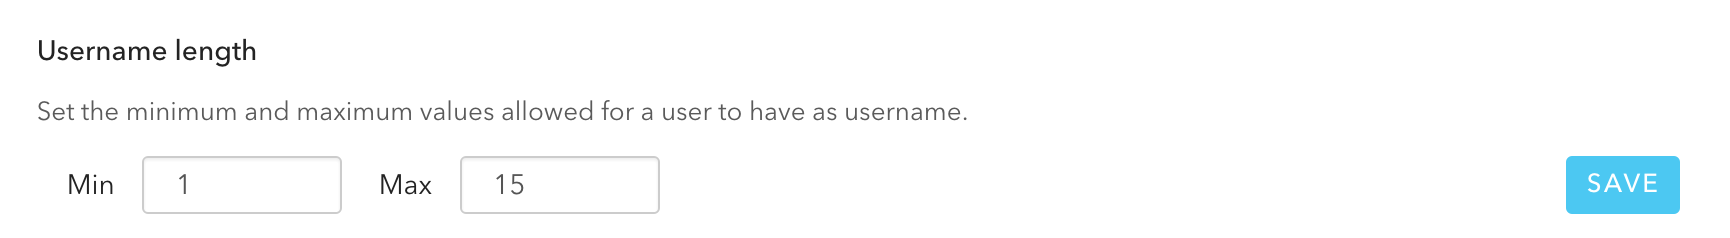 username length